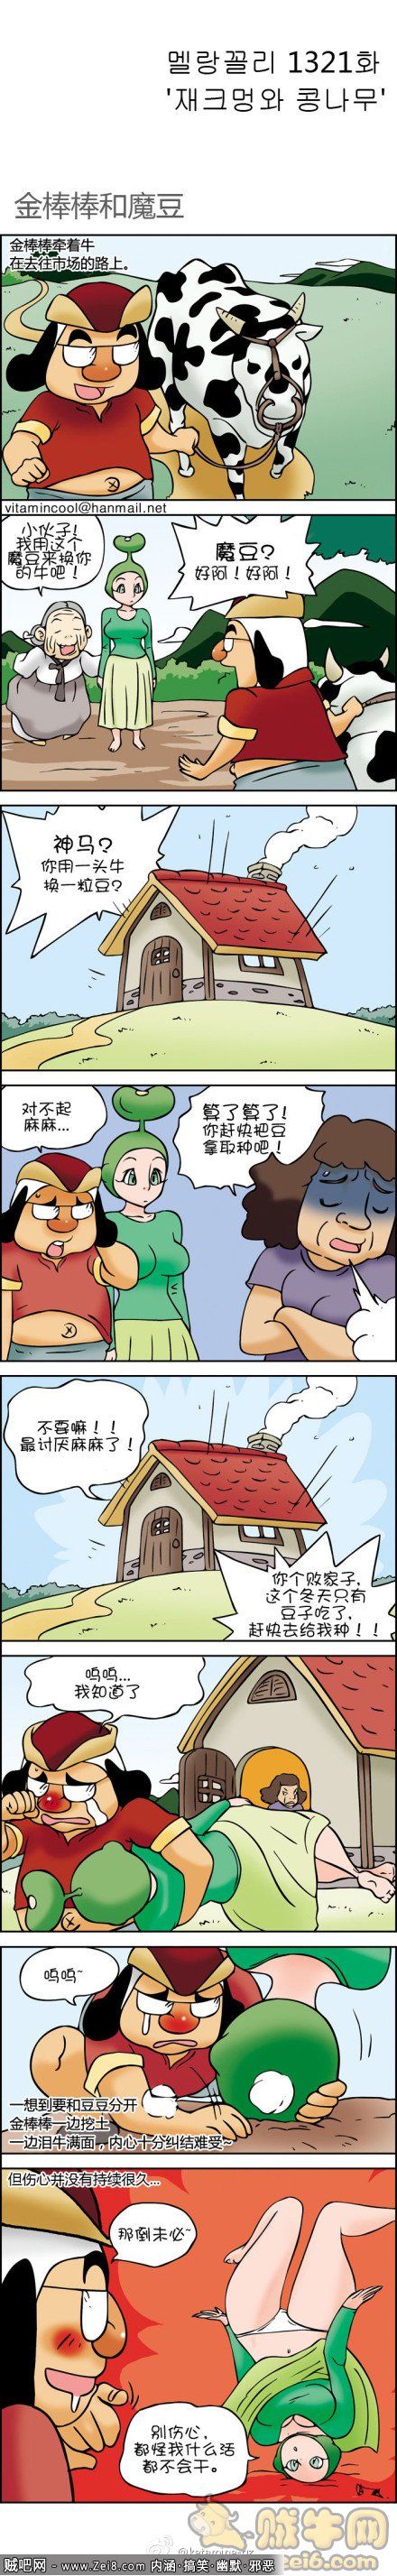 [魔棒韩国漫画]：开心农村1